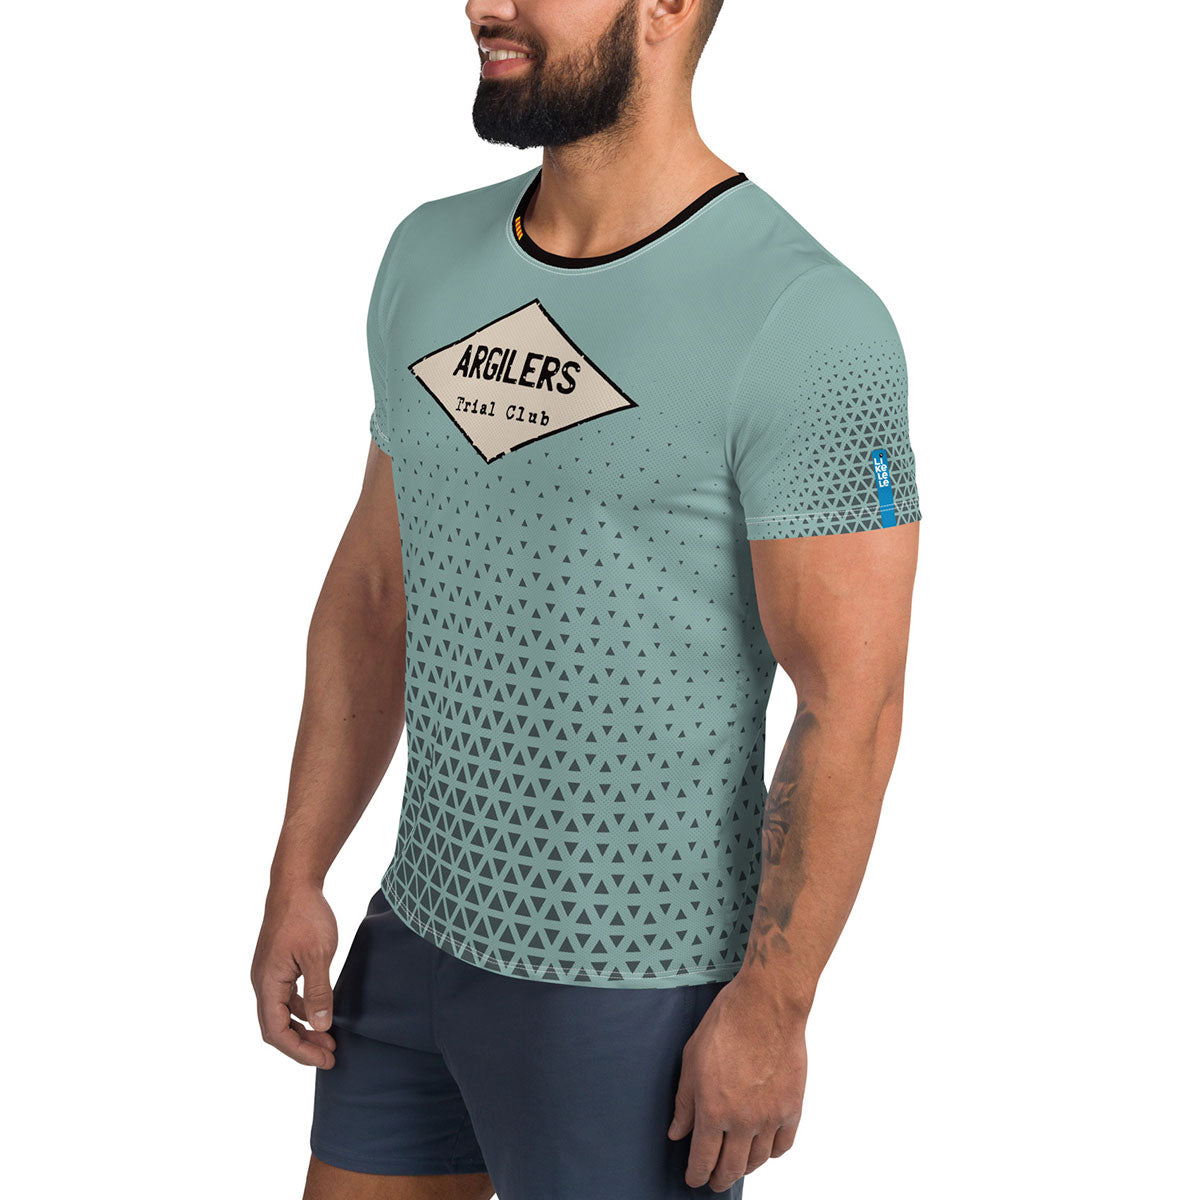 ARGILERS TRIAL CLUB · Camiseta deportiva m/corta·Hombre · Premium·Full Print-270x1ipi